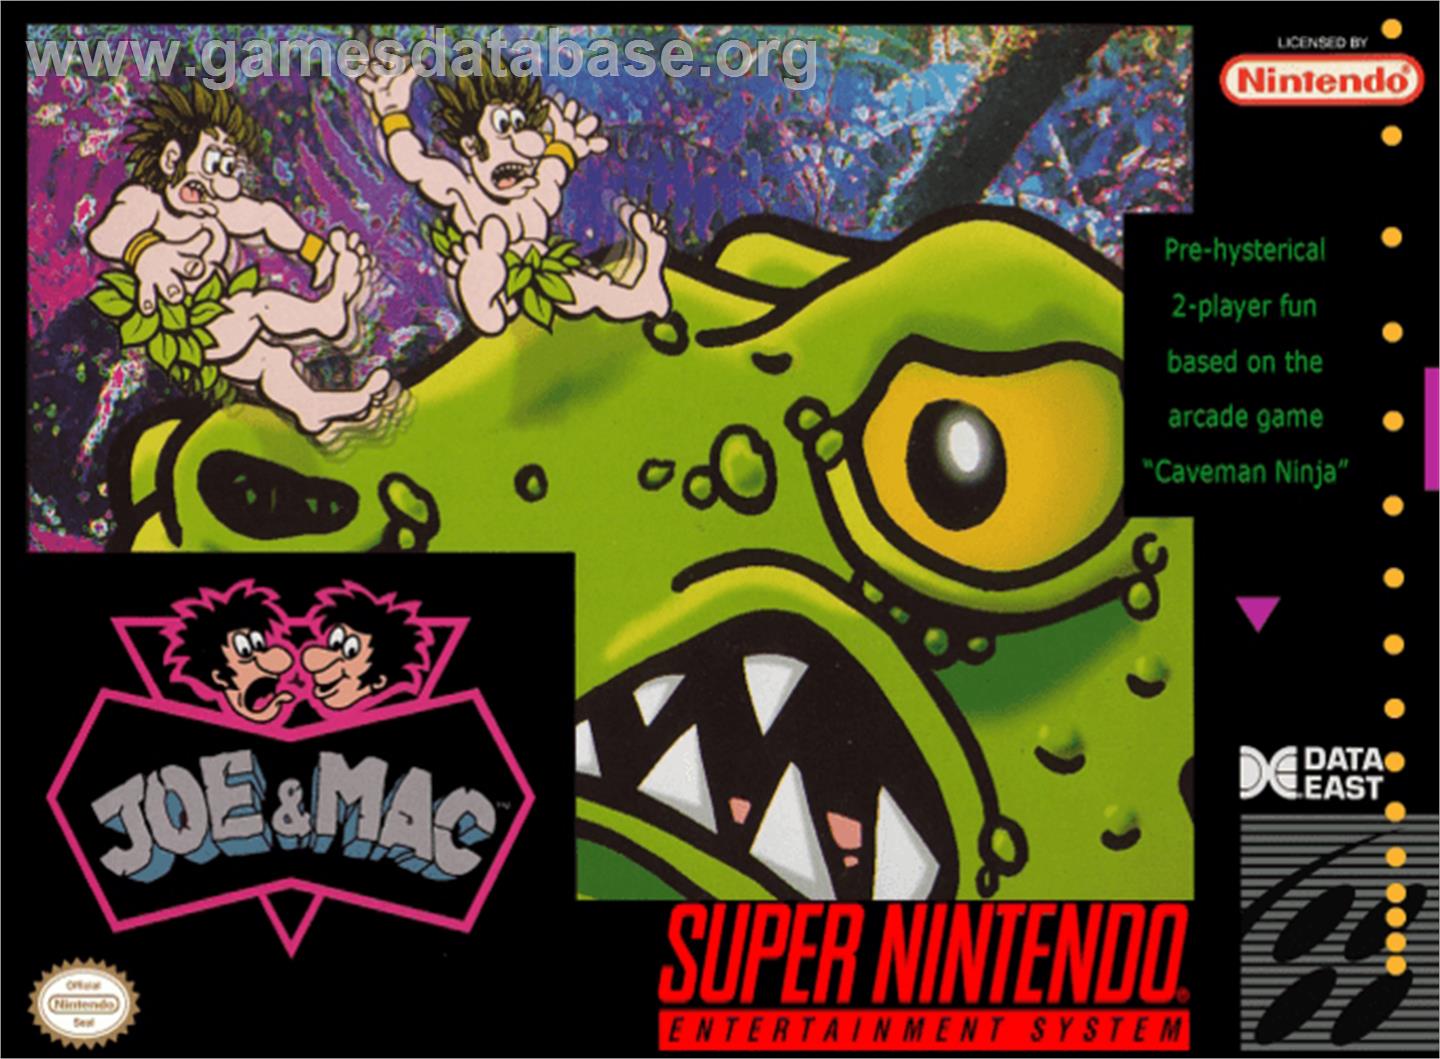 Joe & Mac: Caveman Ninja - Nintendo SNES - Artwork - Box